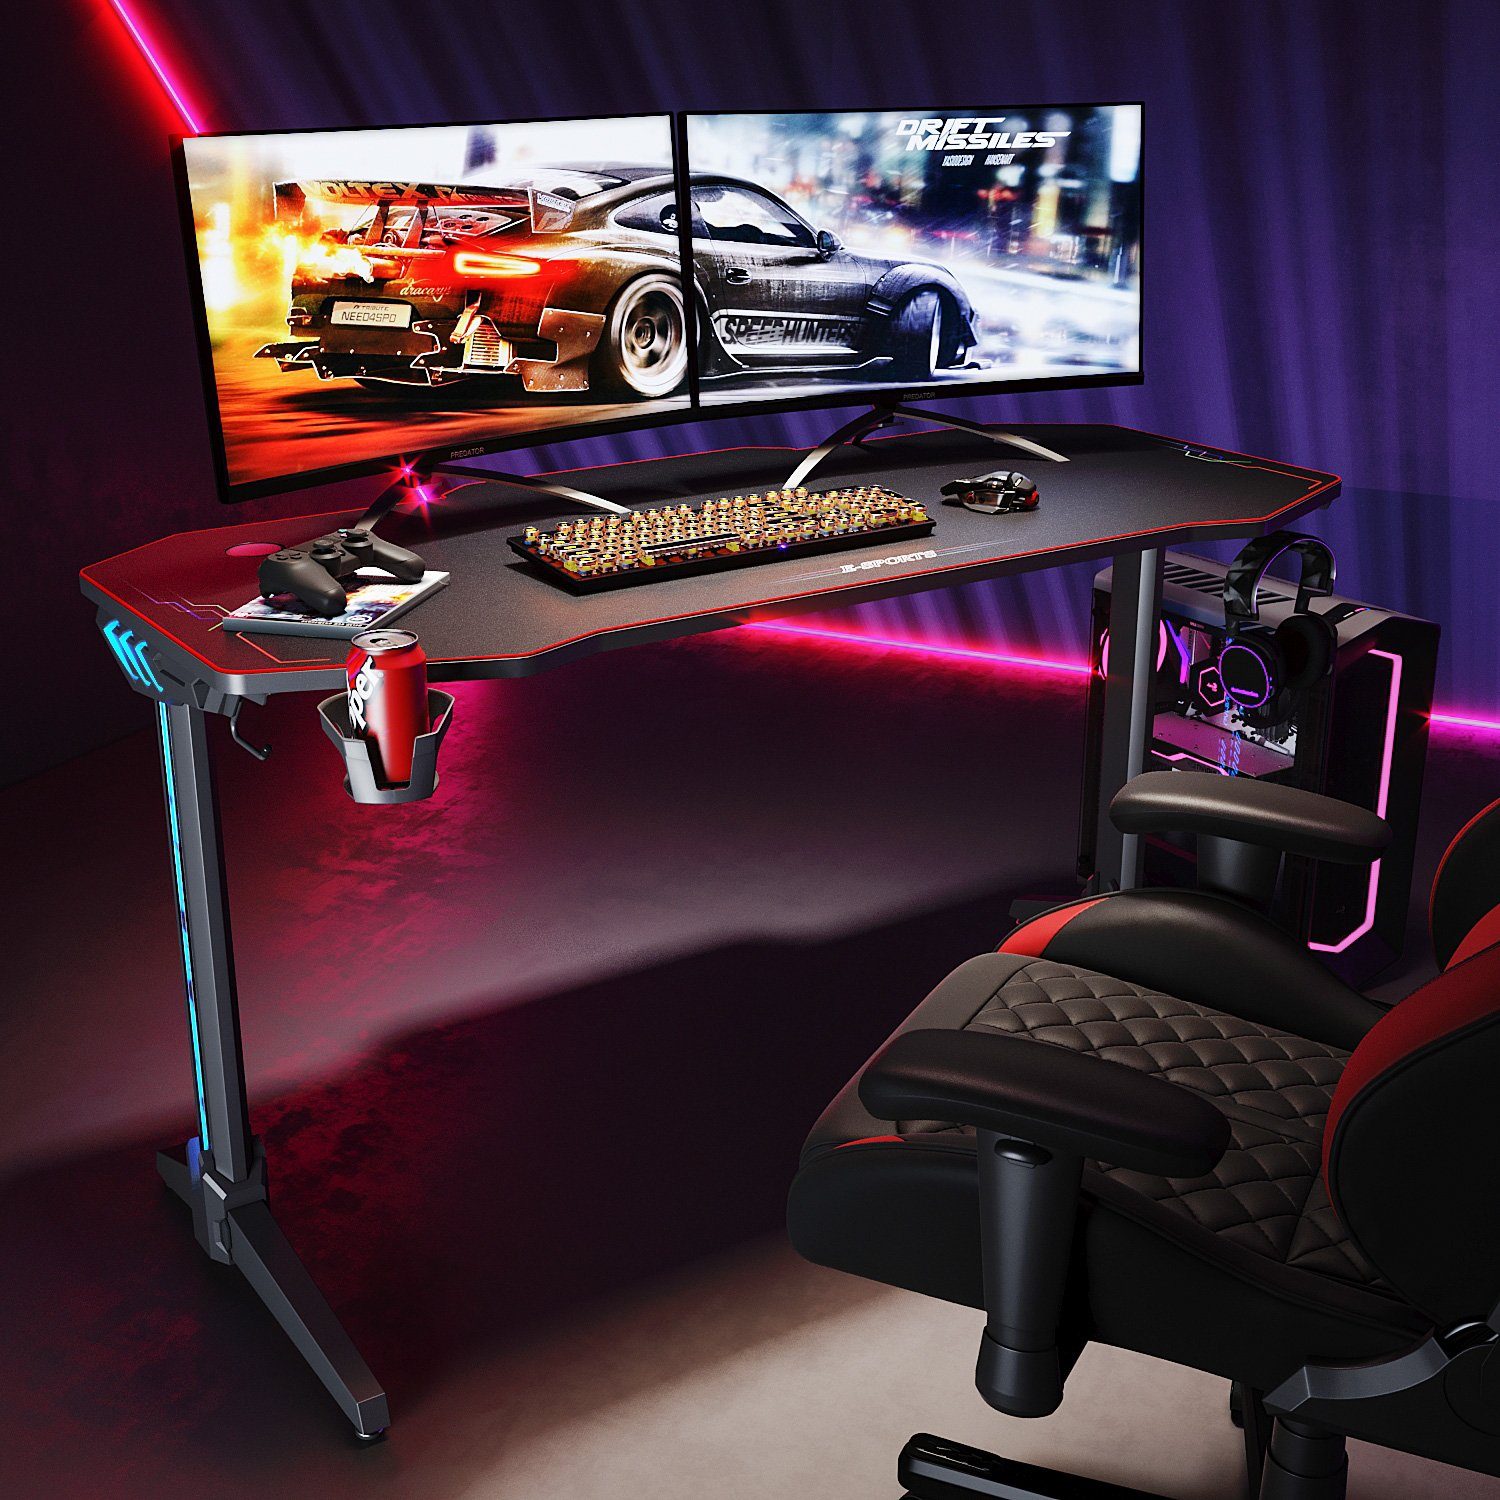 SONNI Gamingtisch Computertisch Schreibtisch mit RGB LED